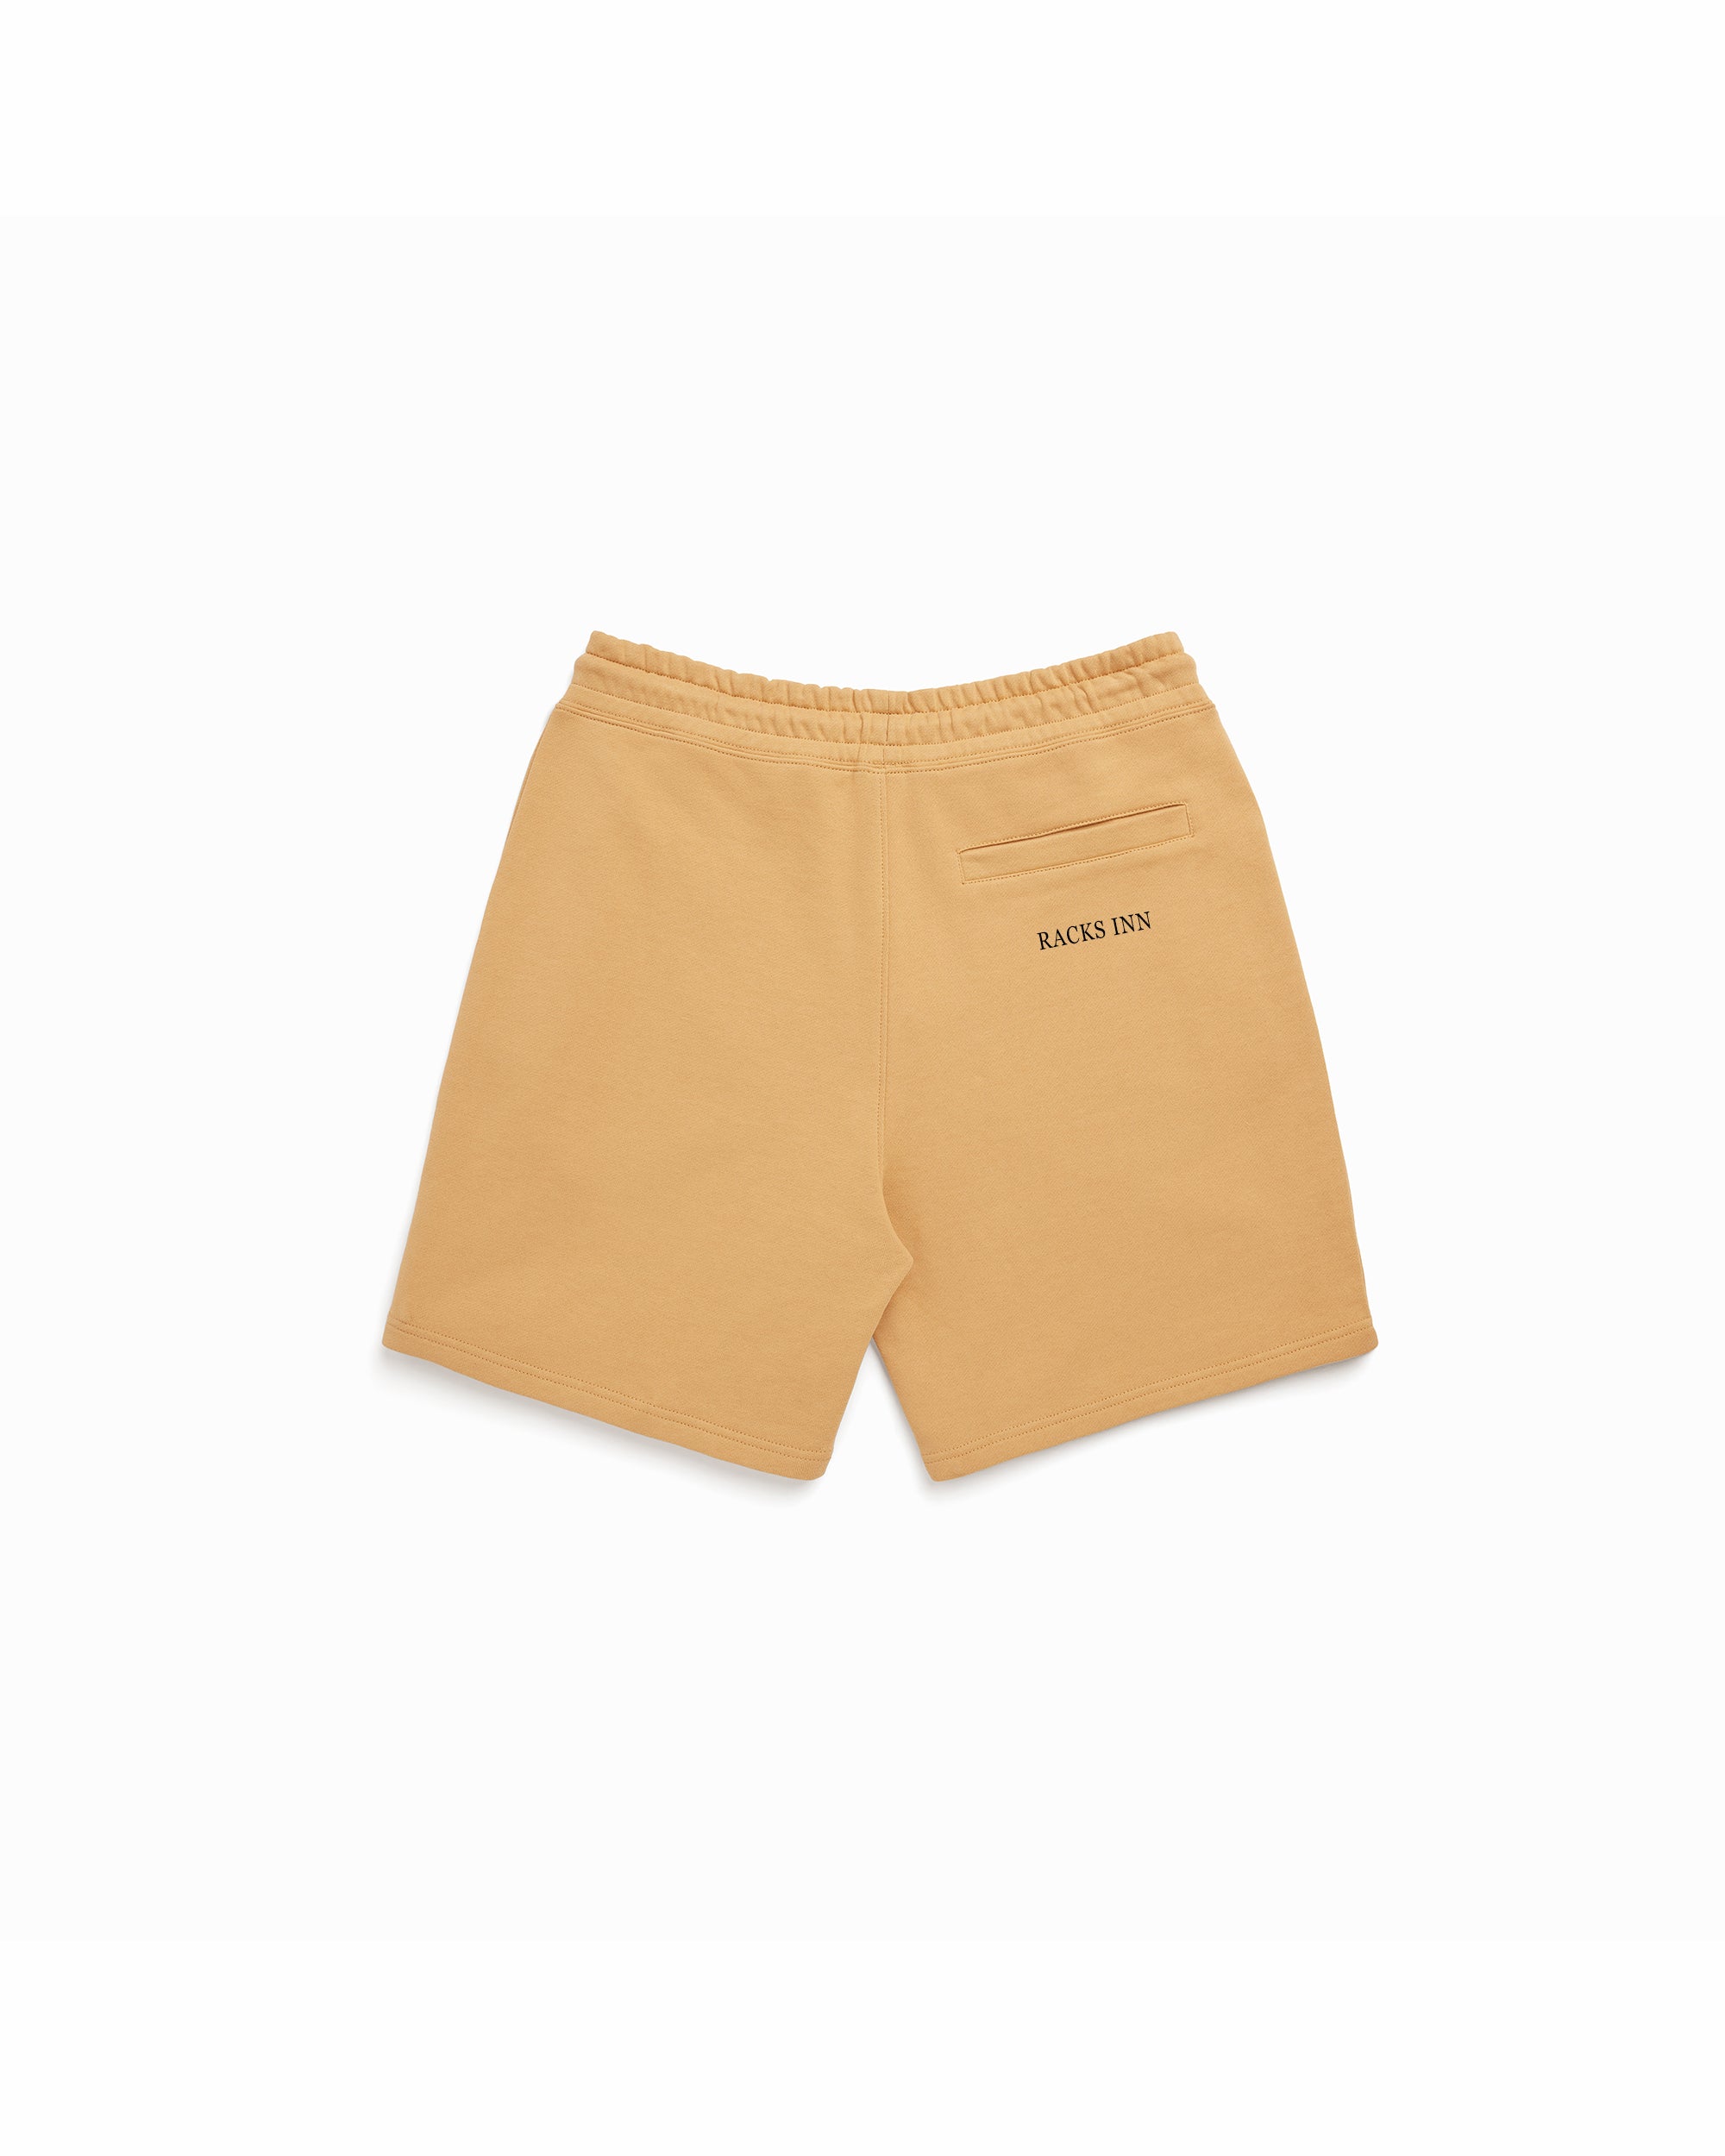 Monogram Shorts - Dust Tan